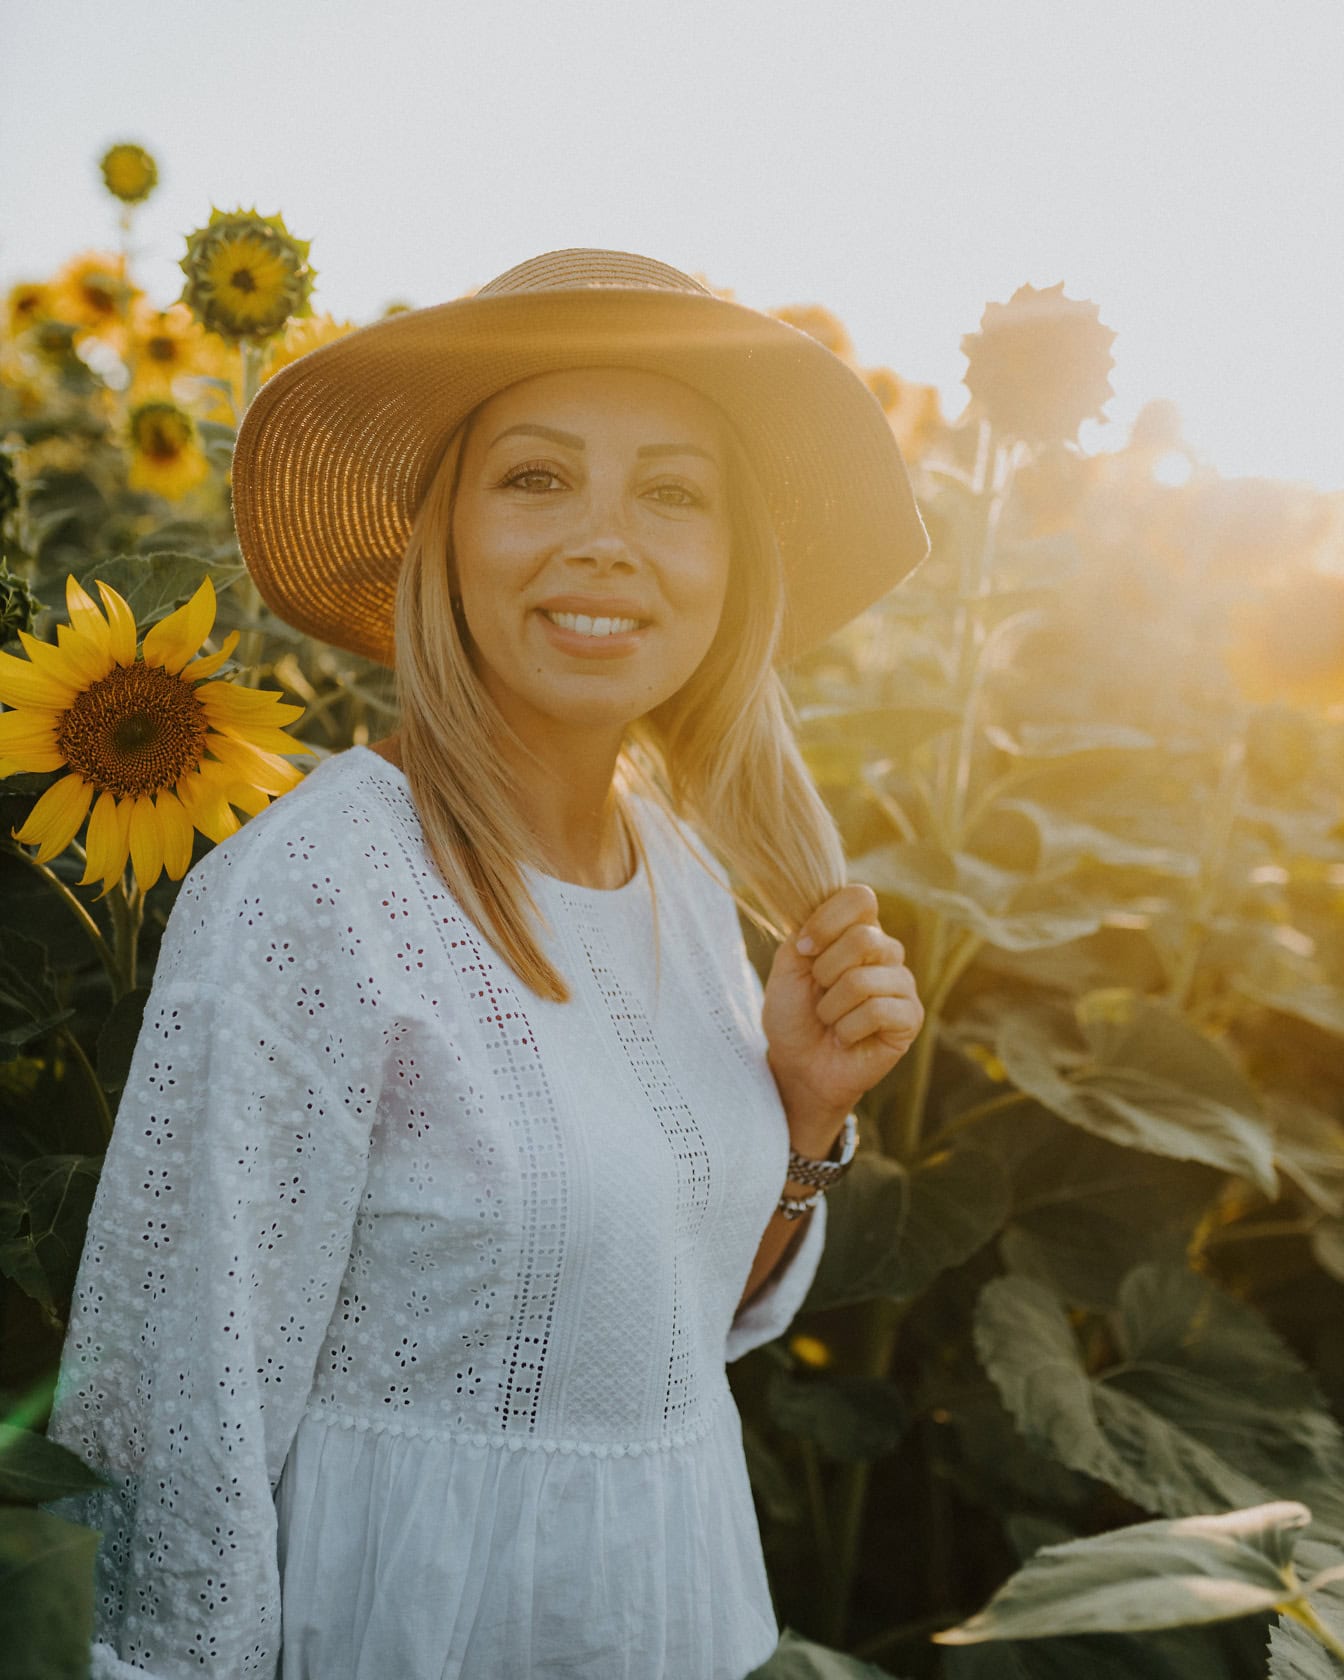 Πορτρέτο ενός χαμογελαστού κοριτσιού της υπαίθρου σε ένα ψάθινο καπέλο σε ένα ηλιοτρόπιο με έντονο ηλιακό φως ως οπίσθιο φωτισμό